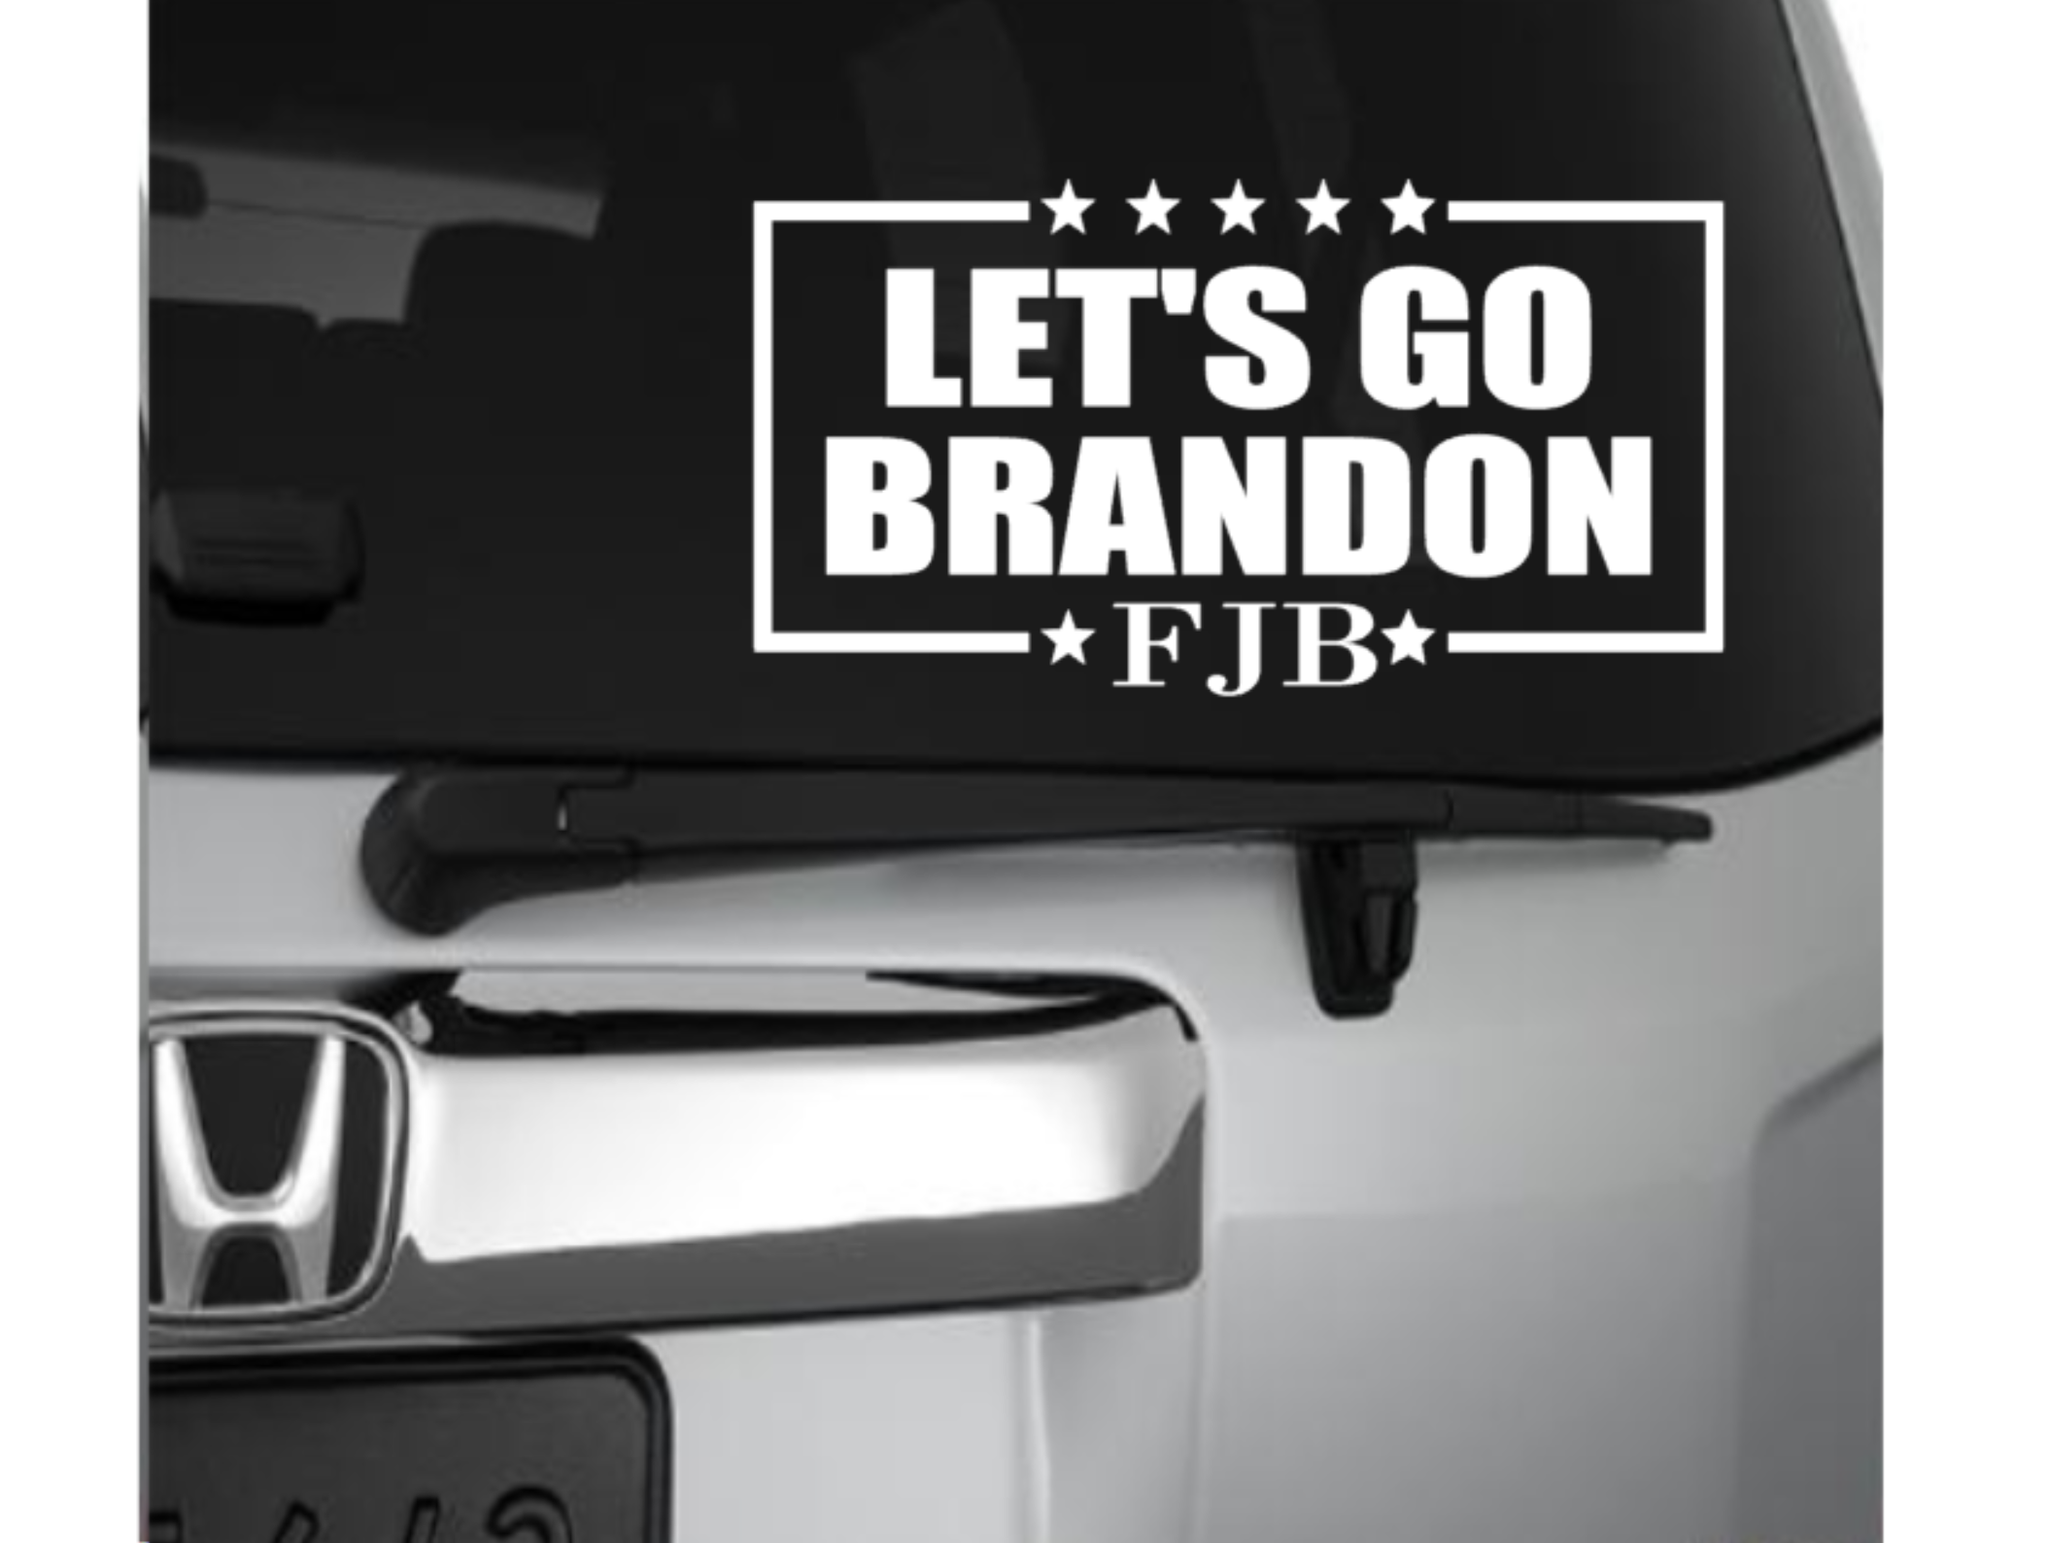 Let's Go Brandon (#FJB)